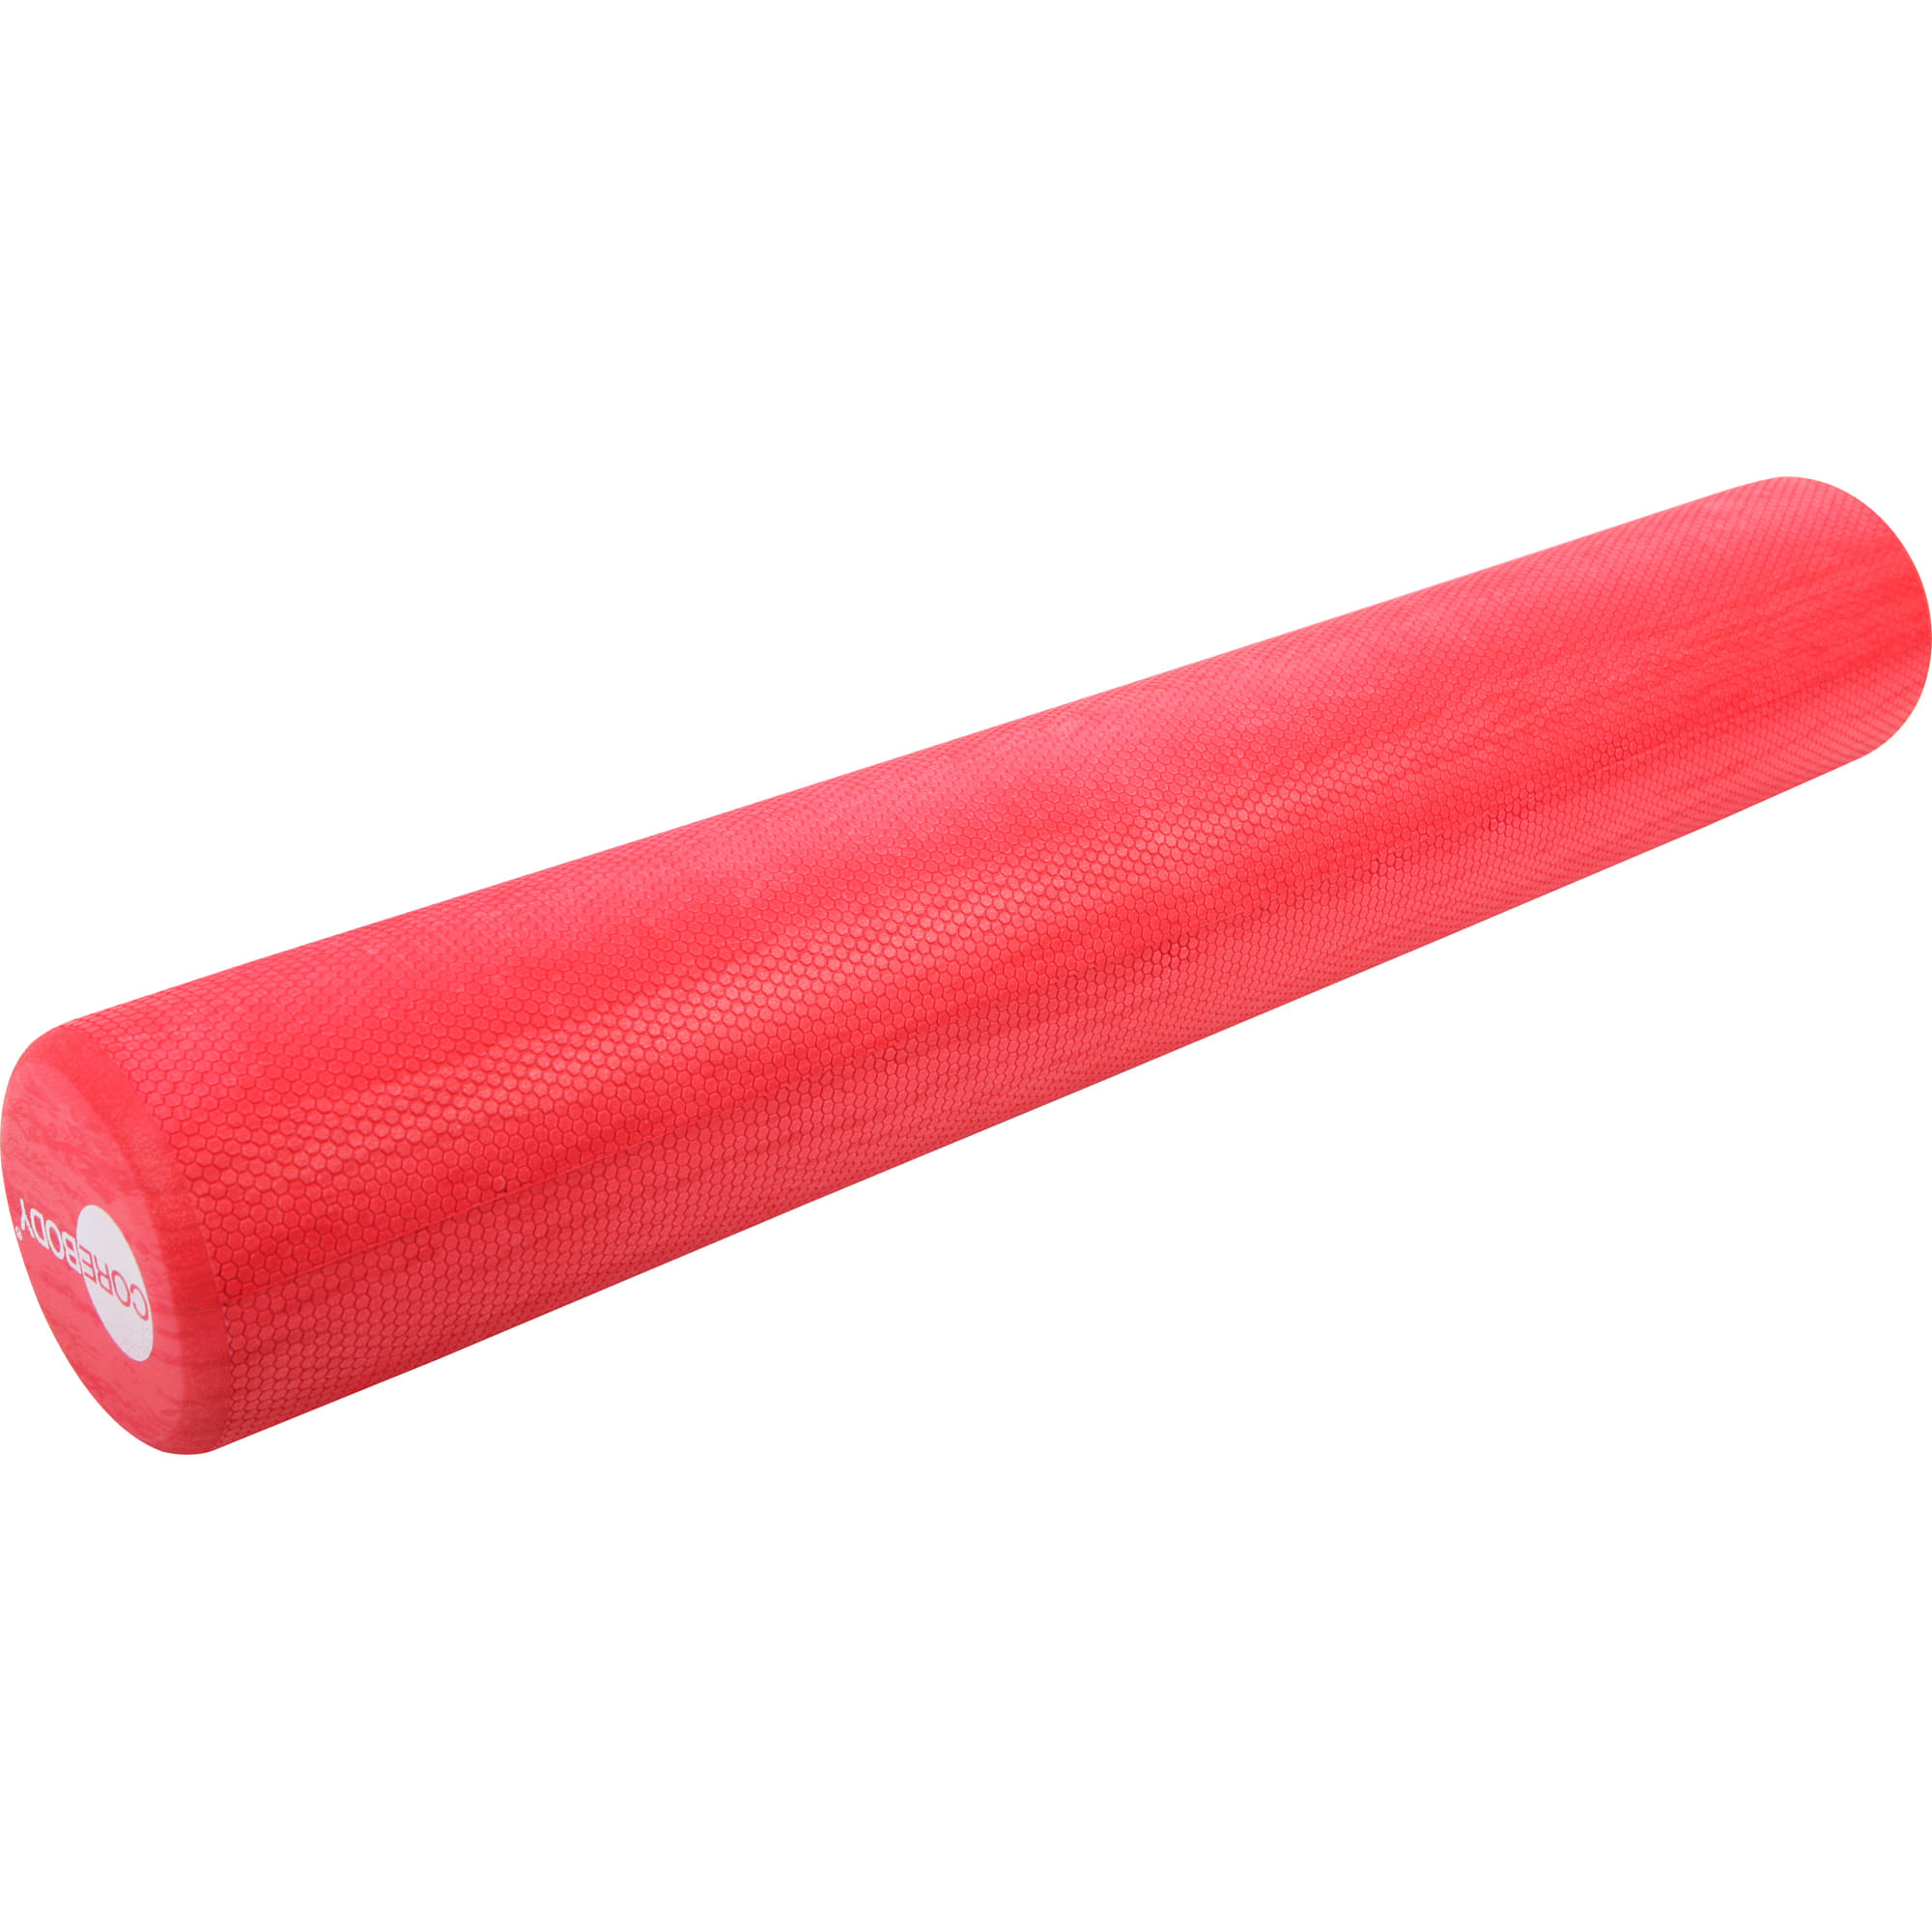 COREBODY® Foam Roller RedMarble 91cm